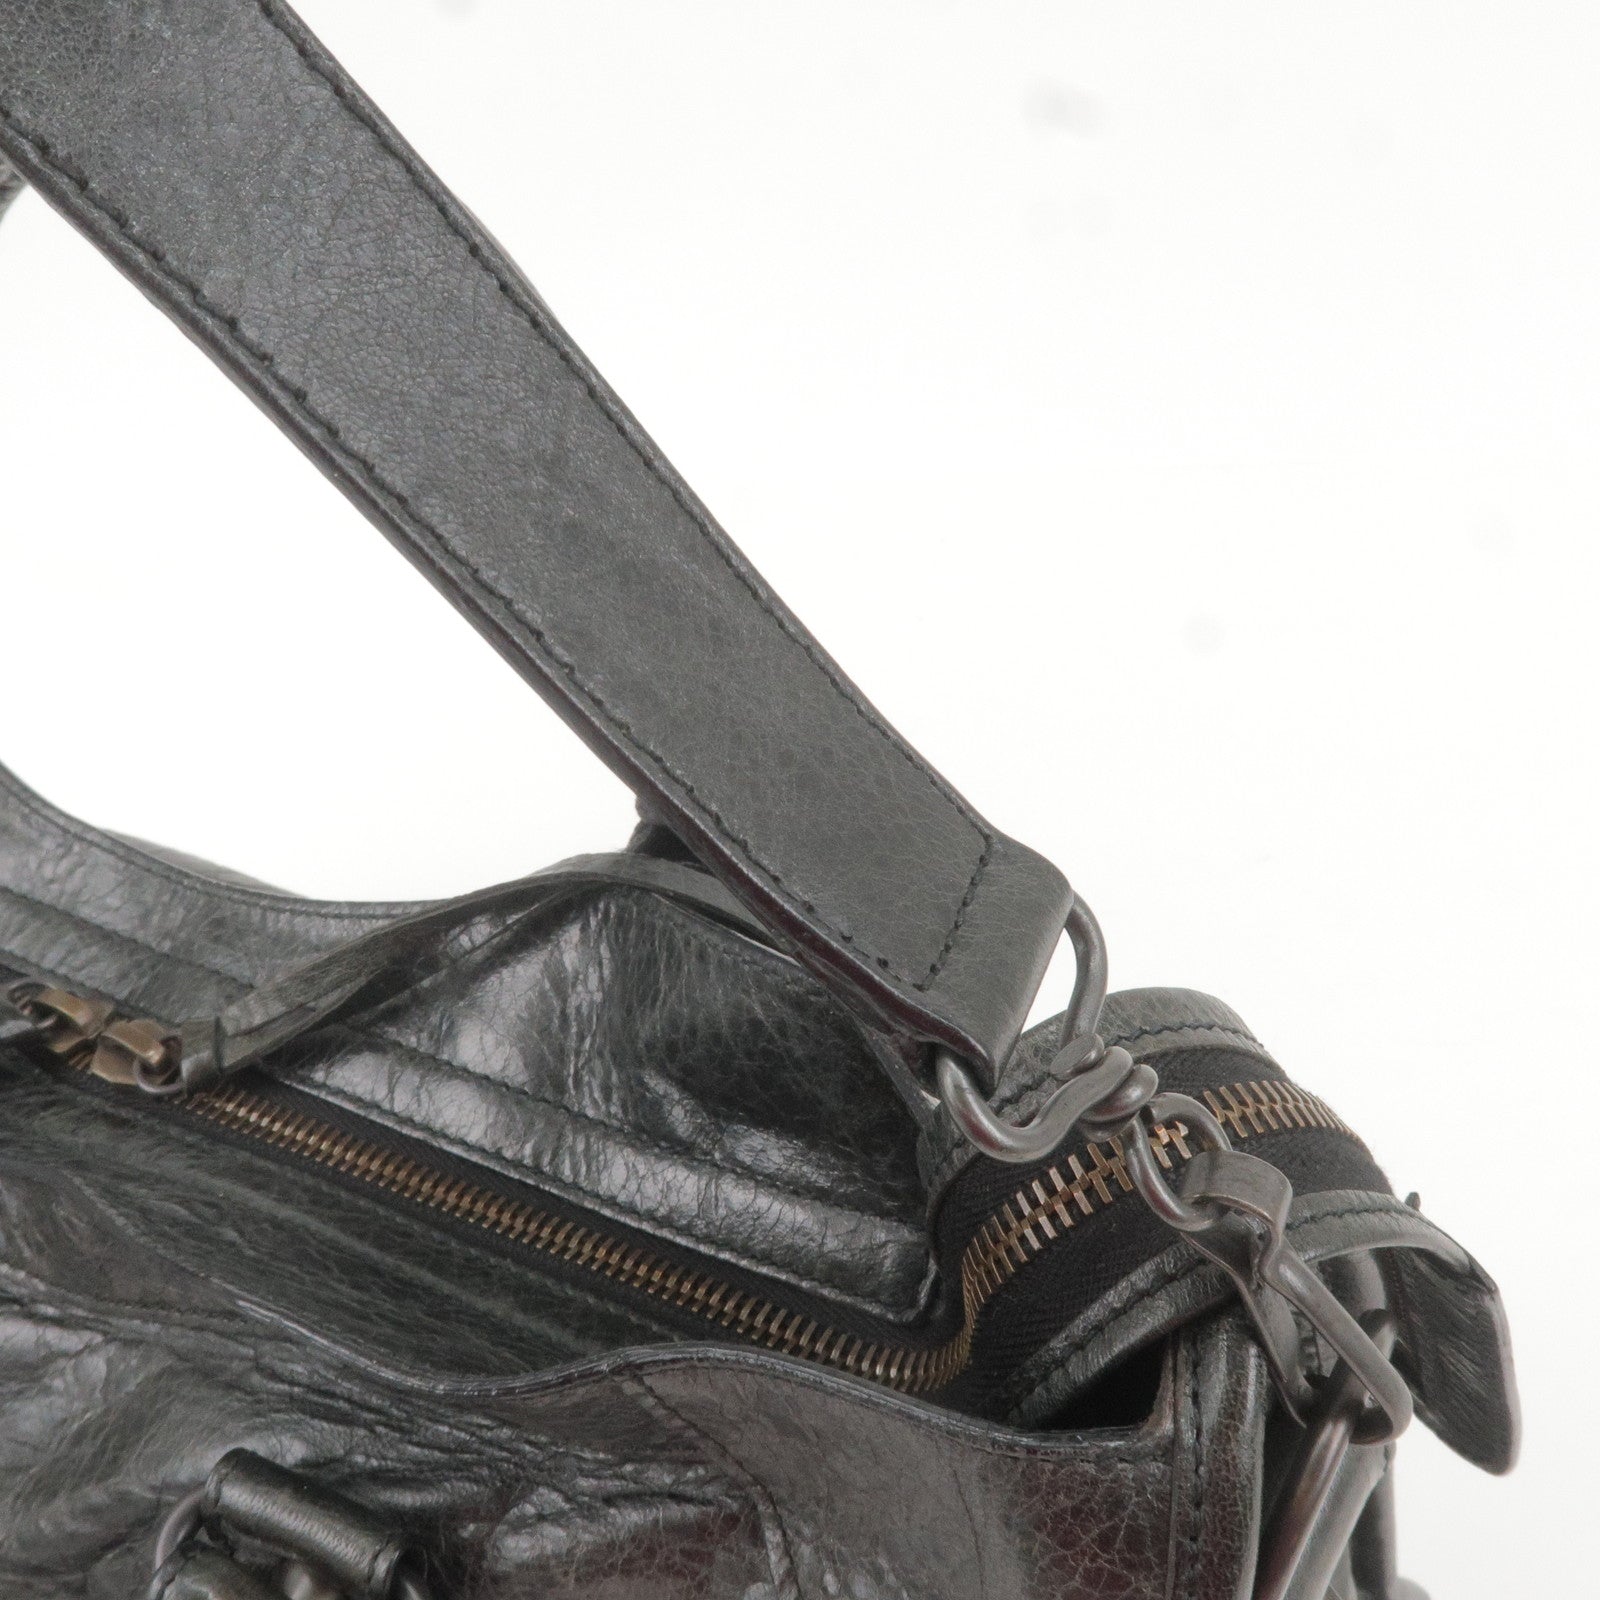 Louis-Vuitton-Set-of-10-Dust-Bag-Storage-Bag-Flap-Beige – dct-ep_vintage  luxury Store